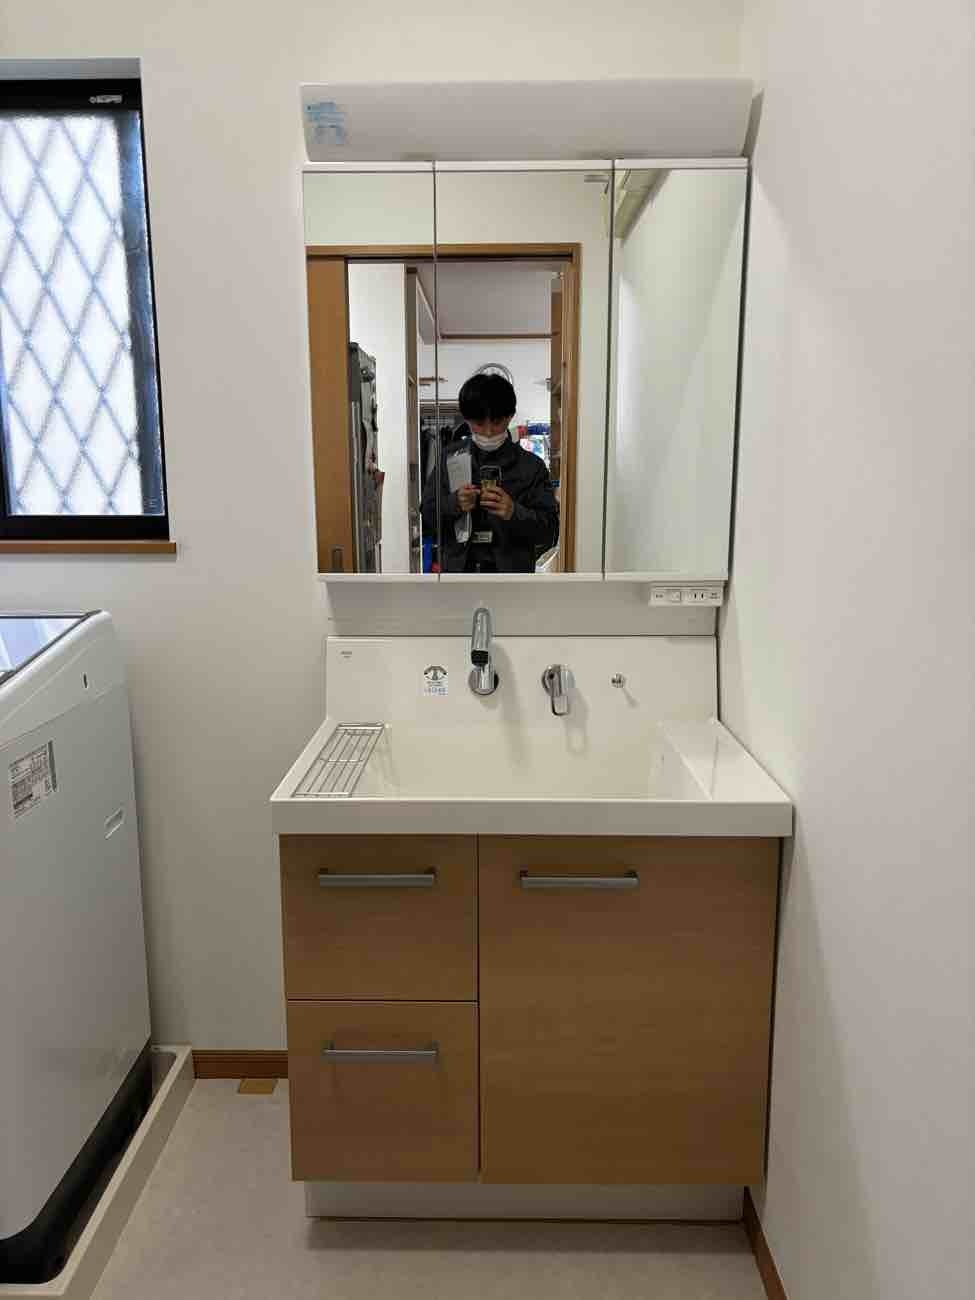 【埼玉県吉川市】M様邸洗面化粧台交換工事が完了しました。LIXIL ピアラ 画像